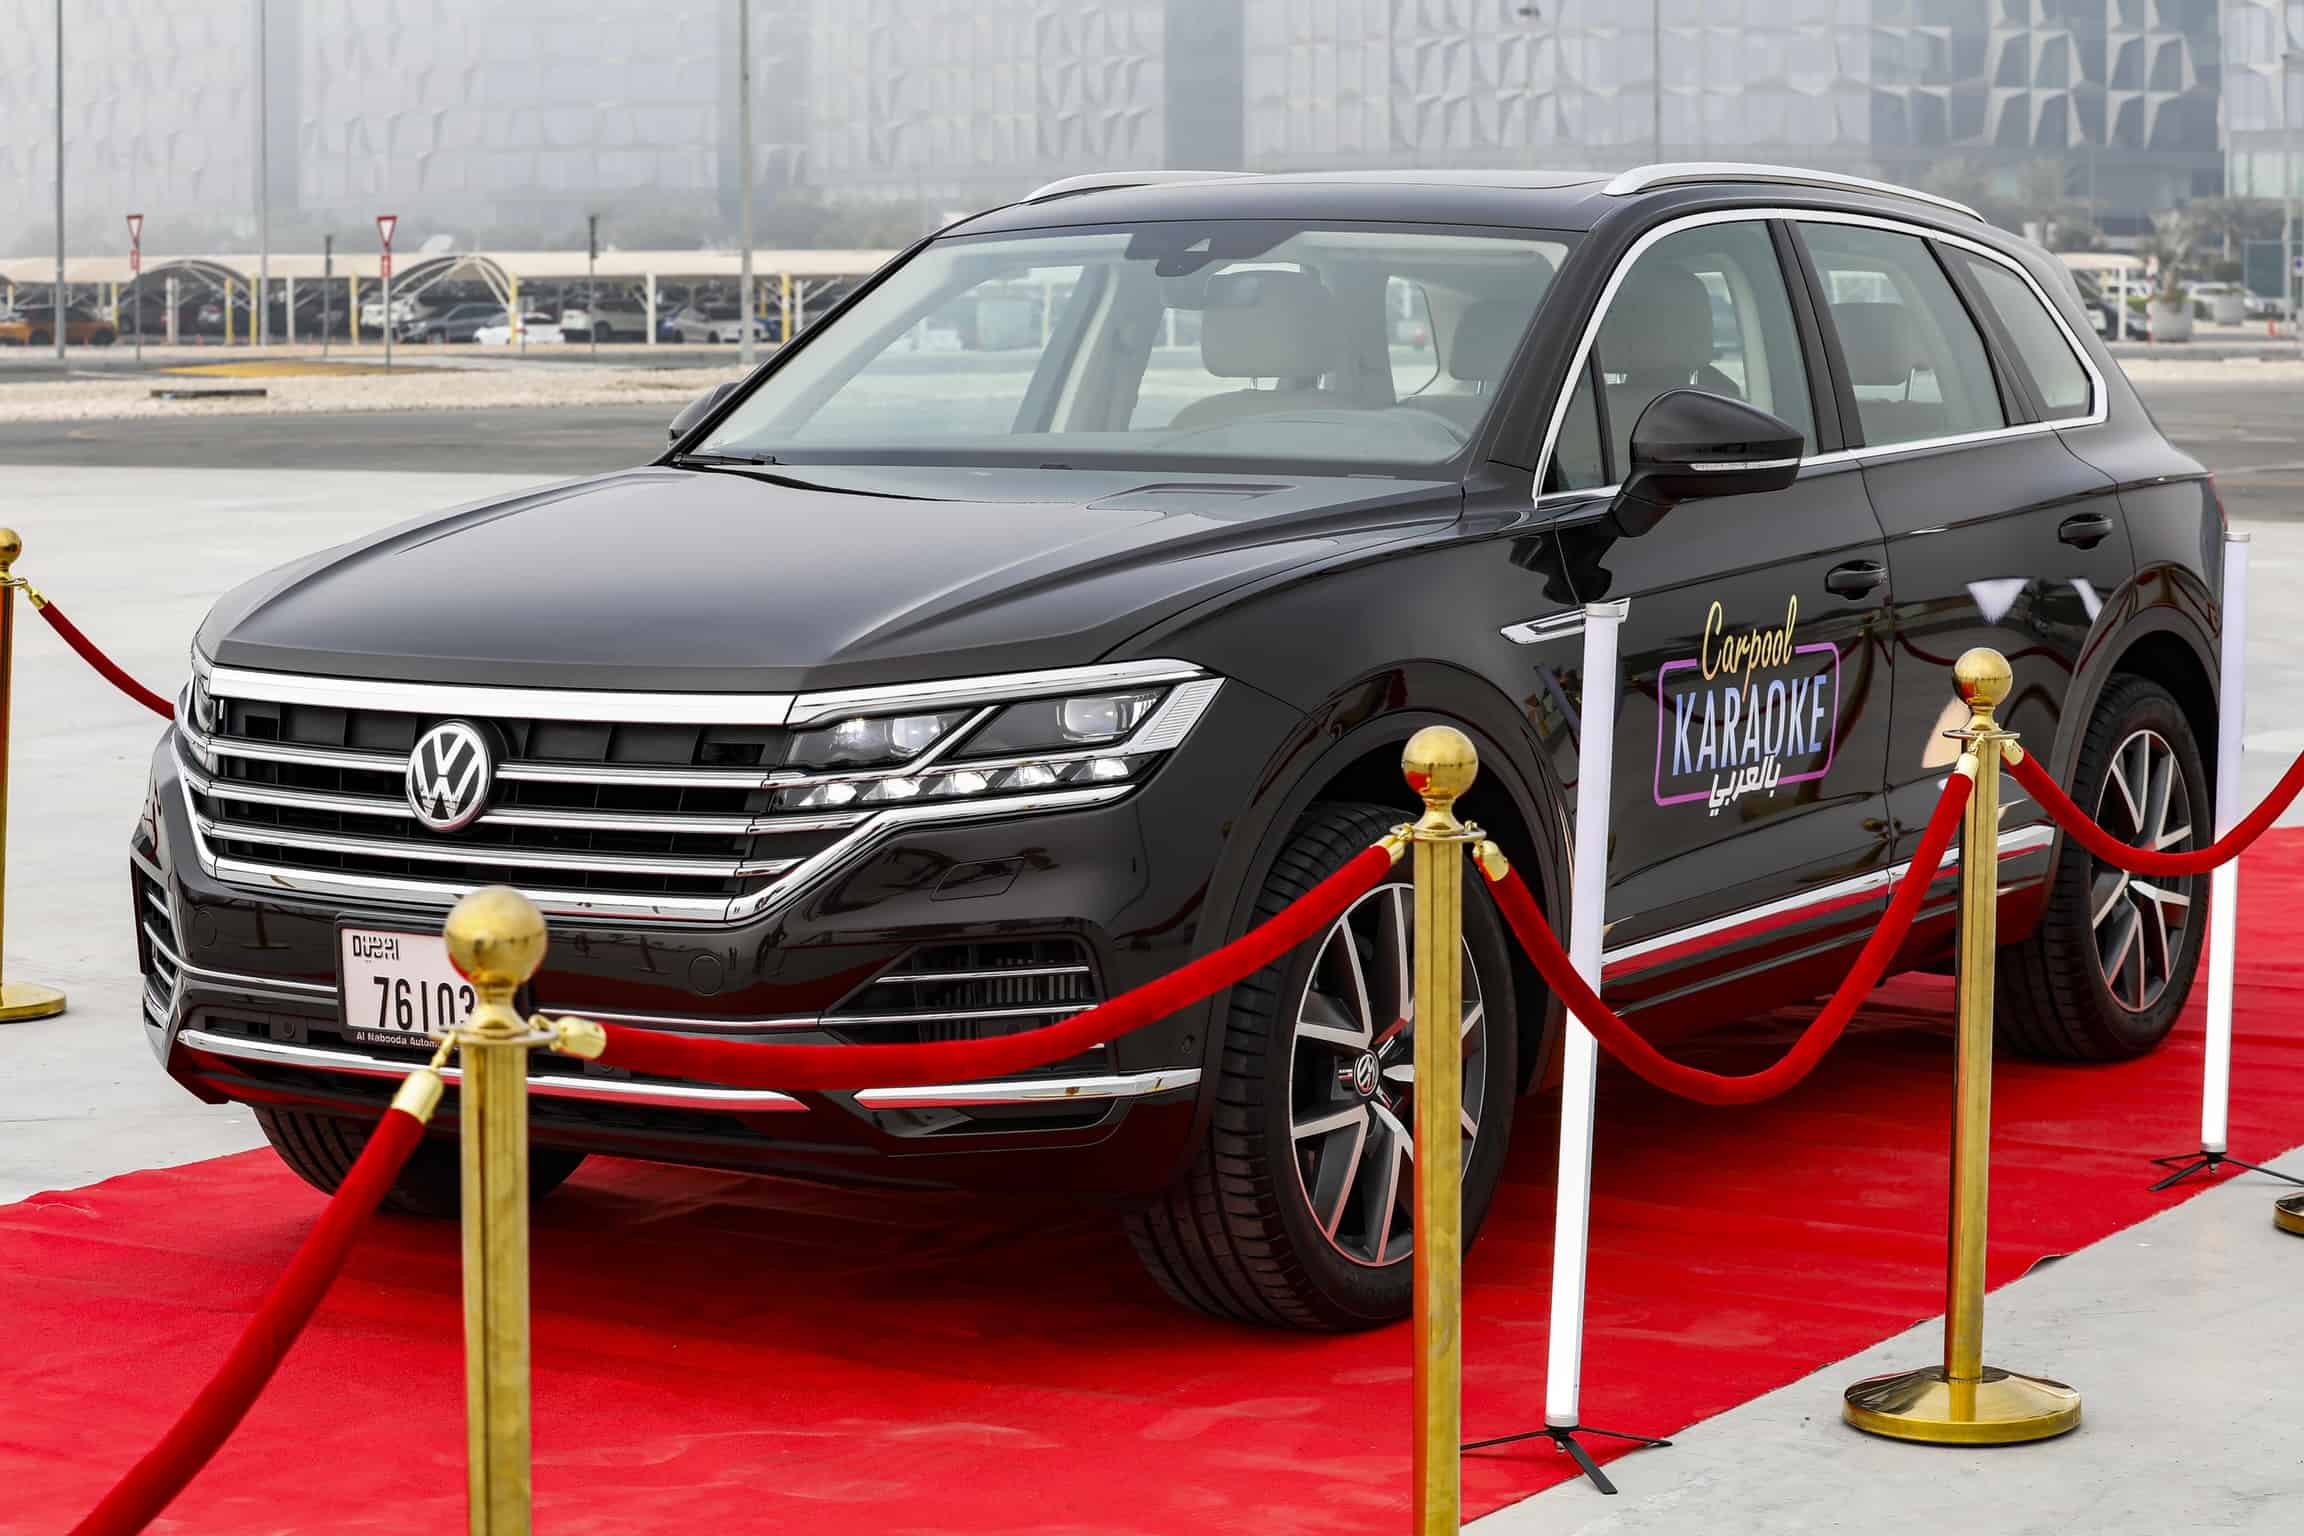 Volkswagen Middle East samarbejder med Carpool Karaoke på arabisk